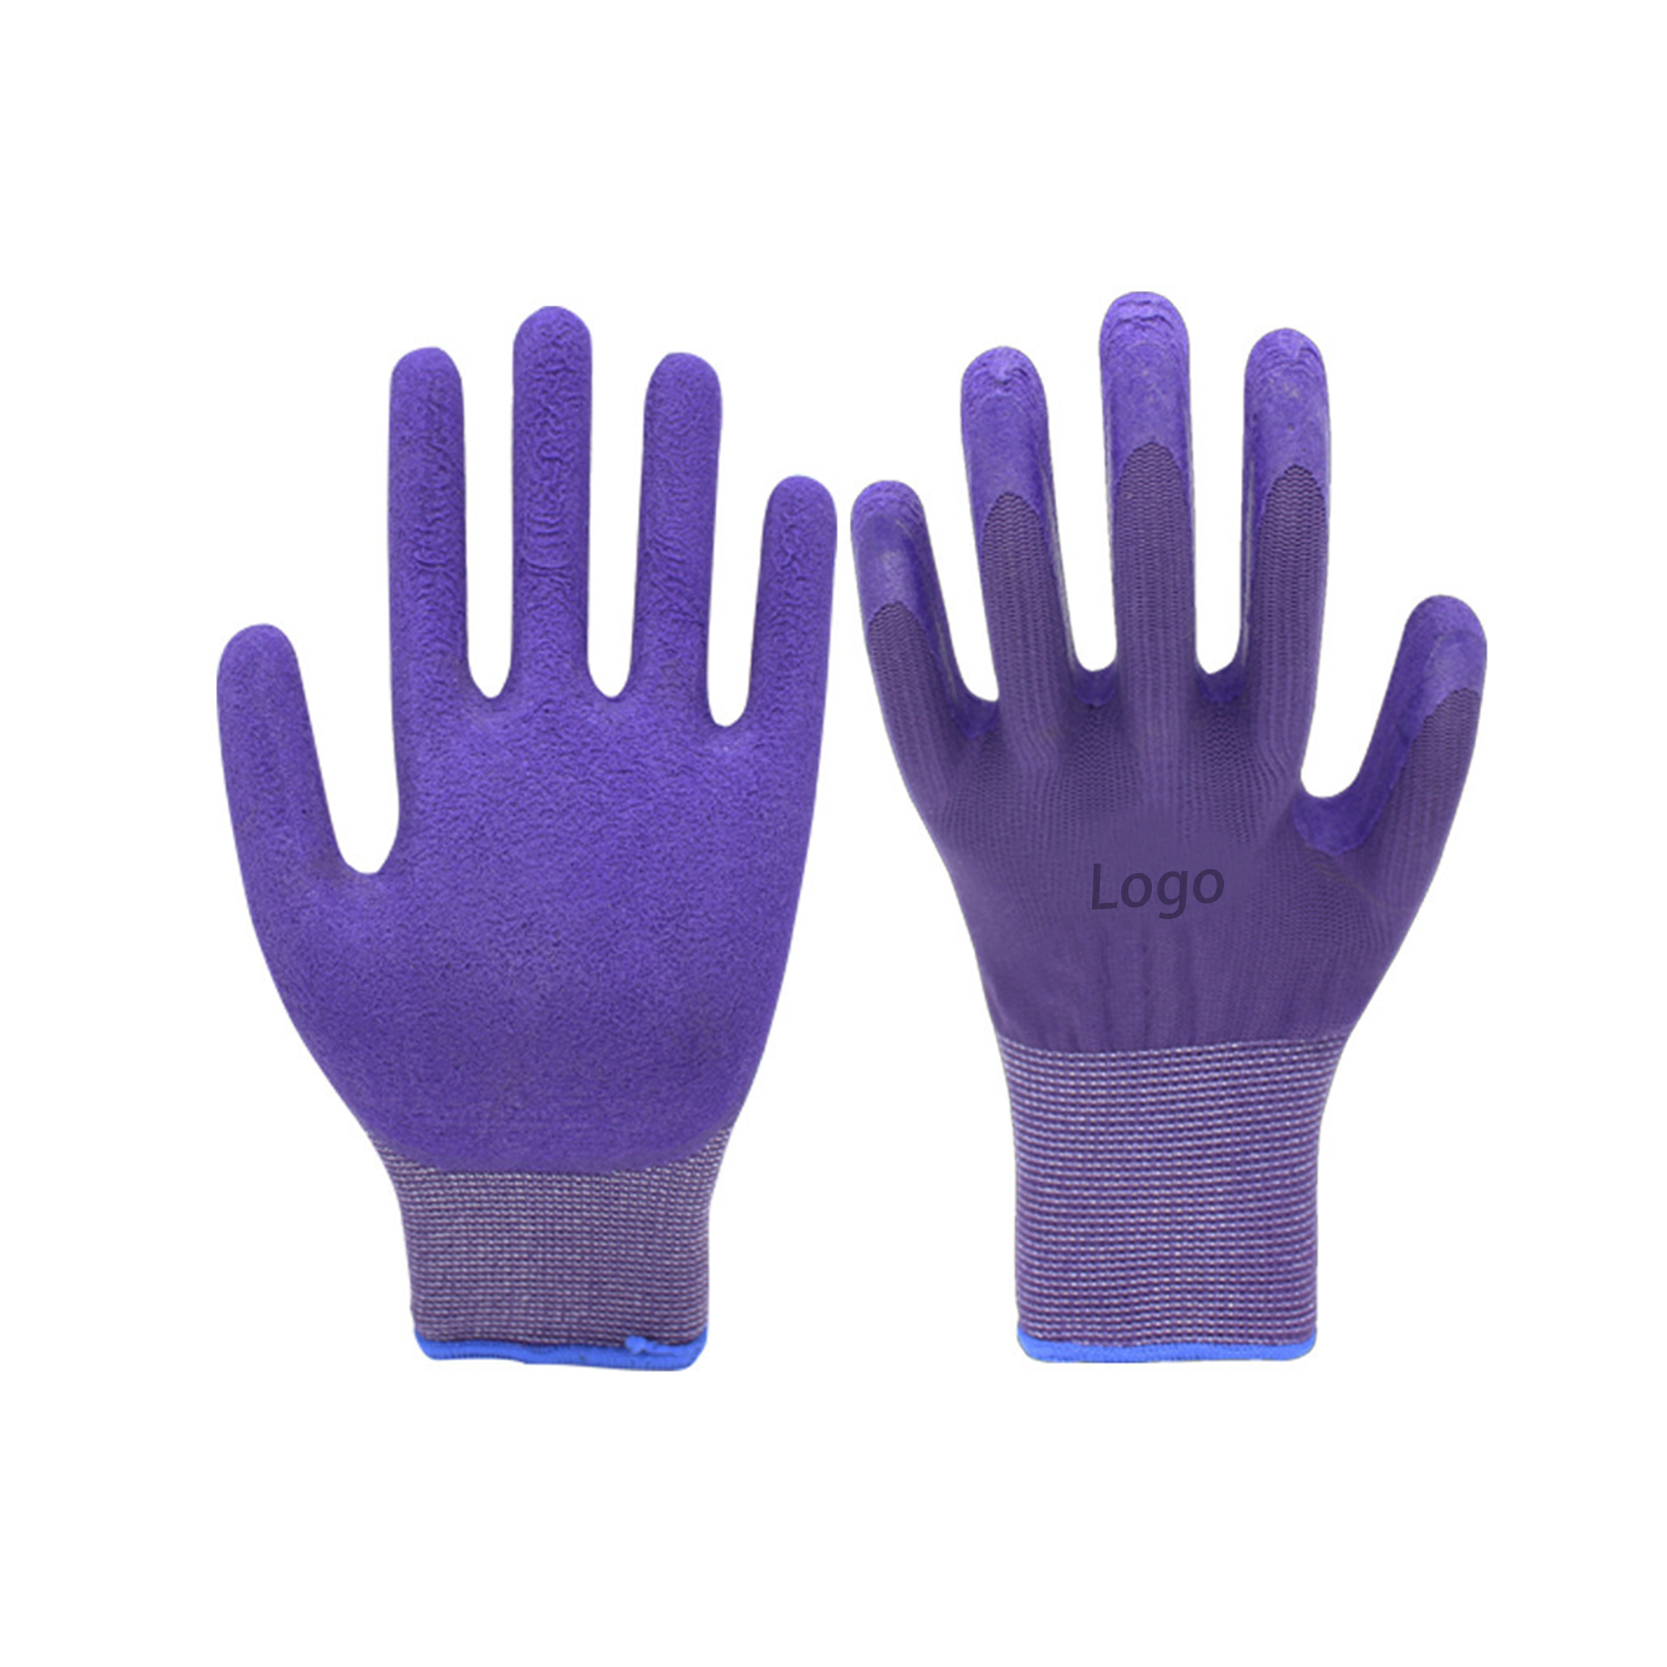 Hellgrauer Nylon-Liner, beschichtet mit lila Schaumlatex auf der Handfläche, rutschfester Gartenhandschuh für Arbeitsgeräte